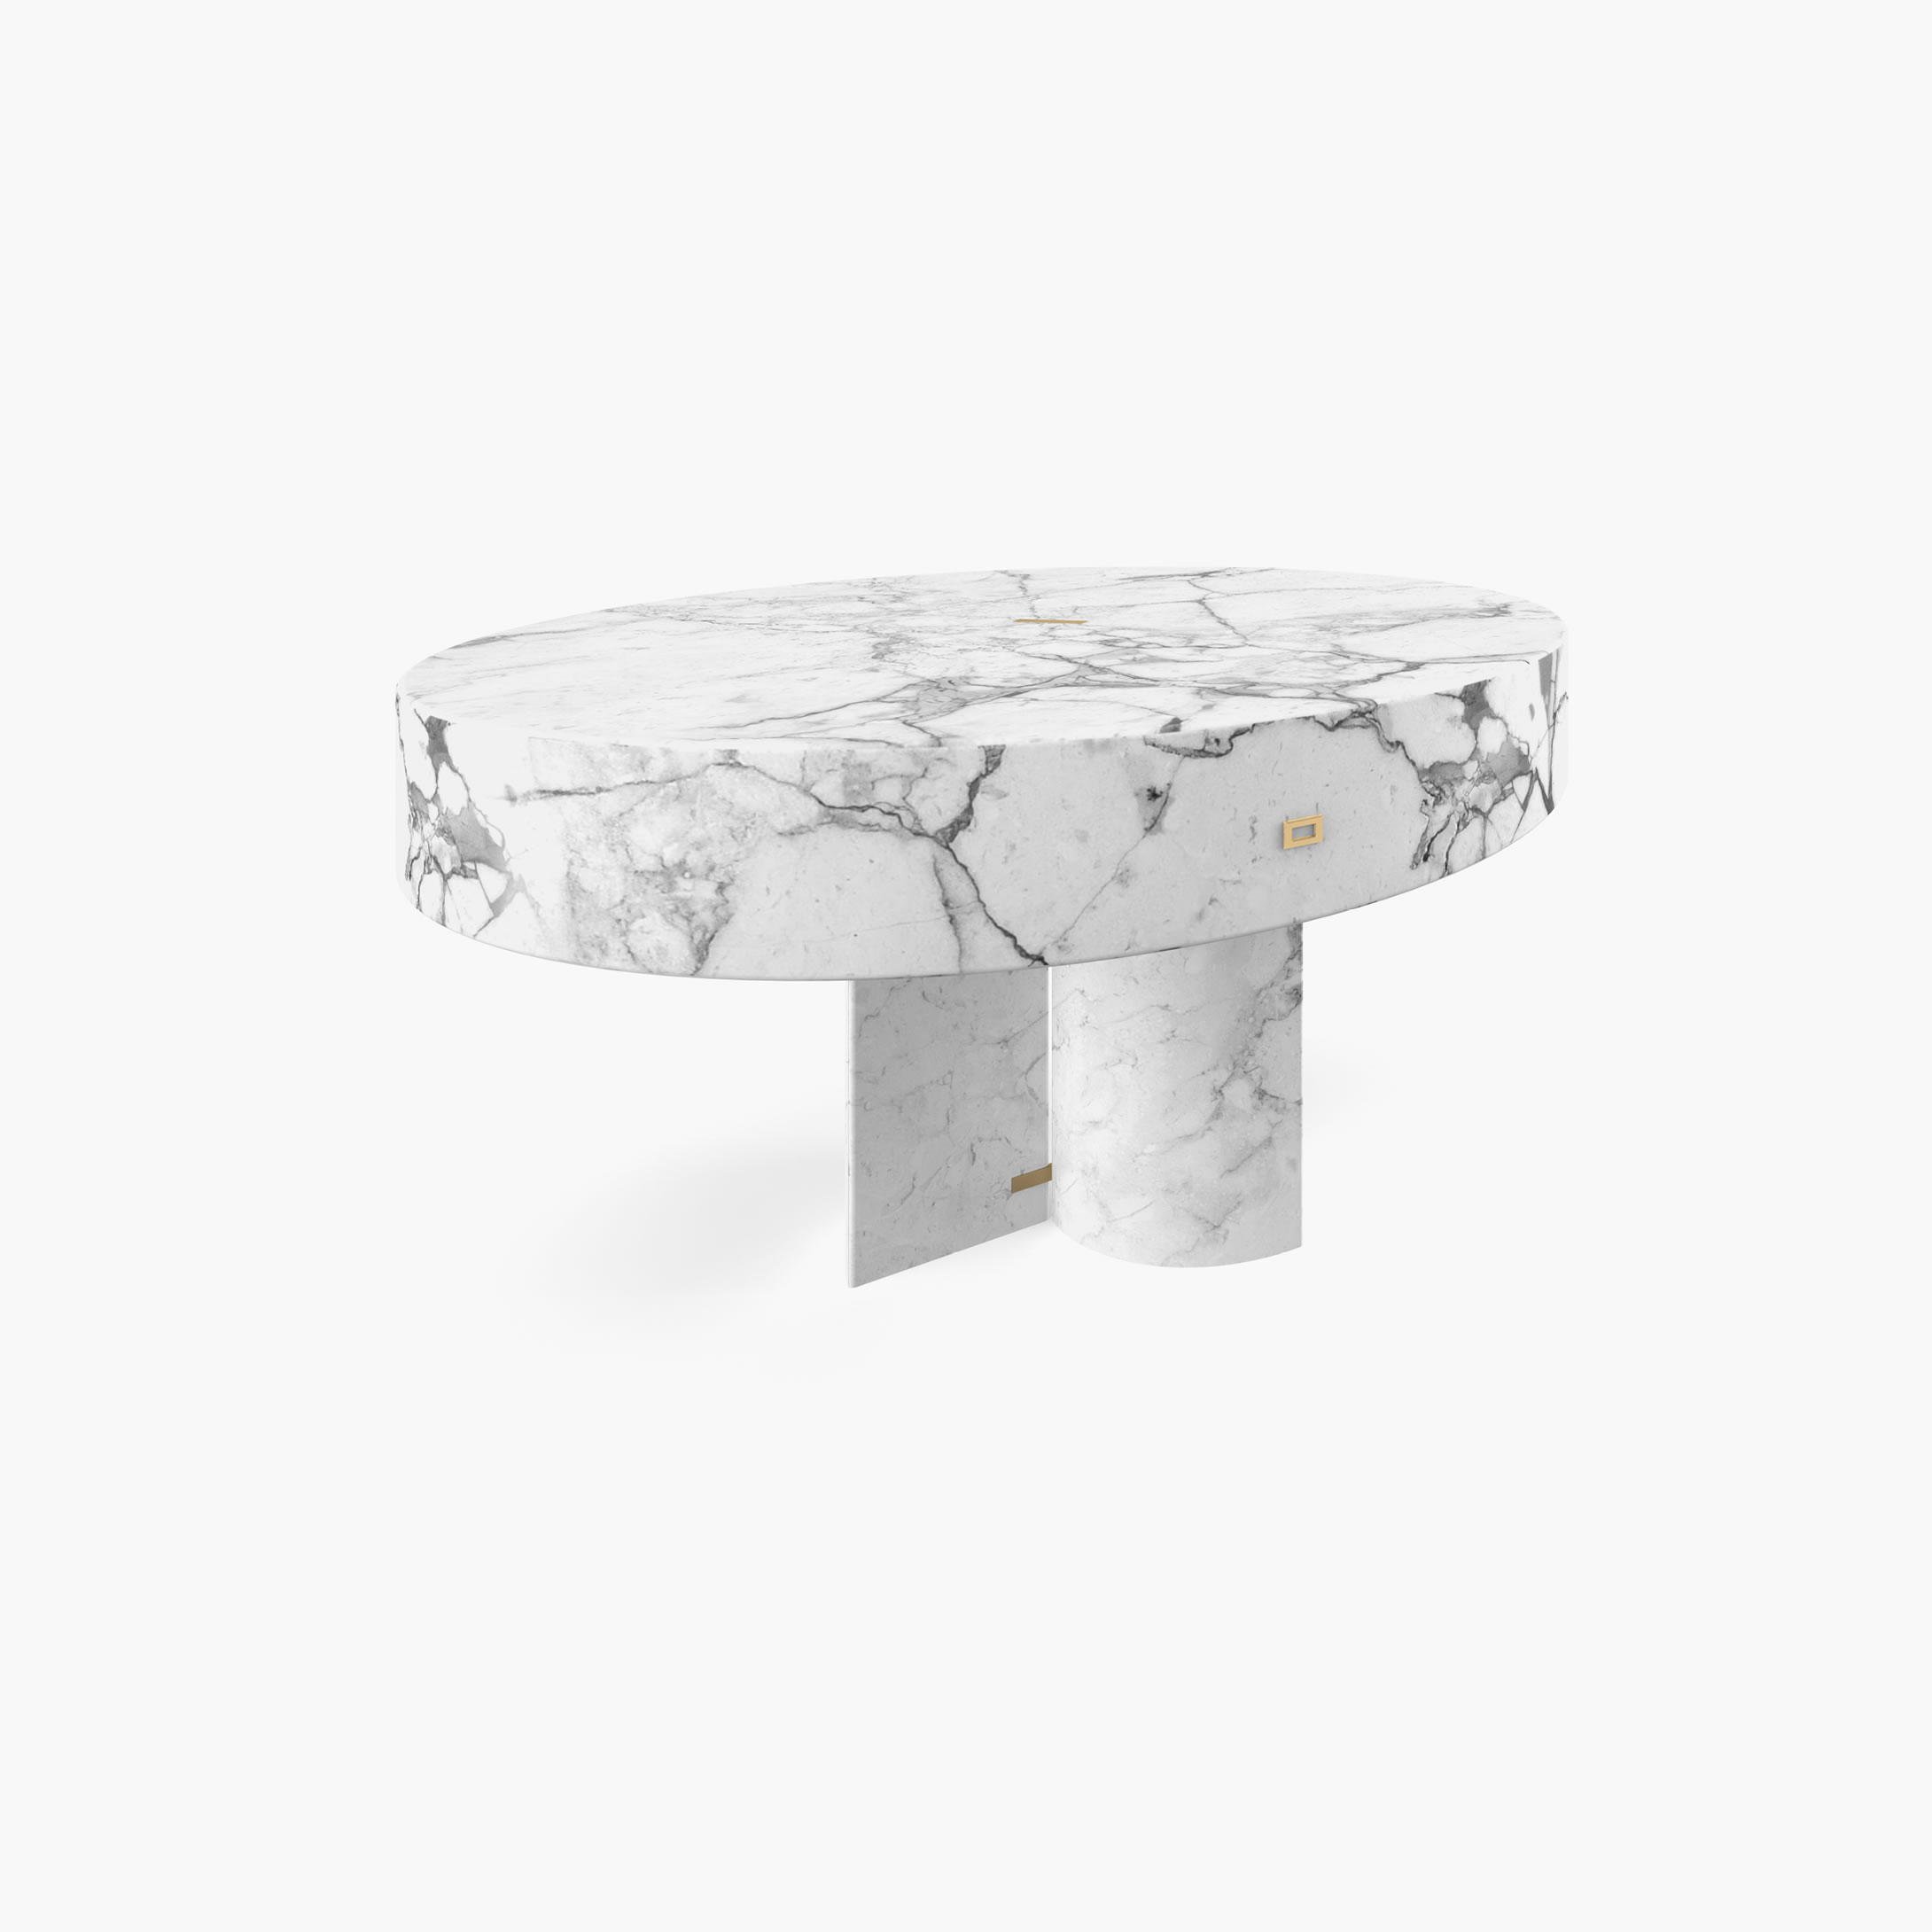 Beistelltisch rund Zylinder Quader Prisma Weiss Arabescato Marmor elegant Wohnzimmer Kunstwerk Beistelltische FS 127 FELIX SCHWAKE